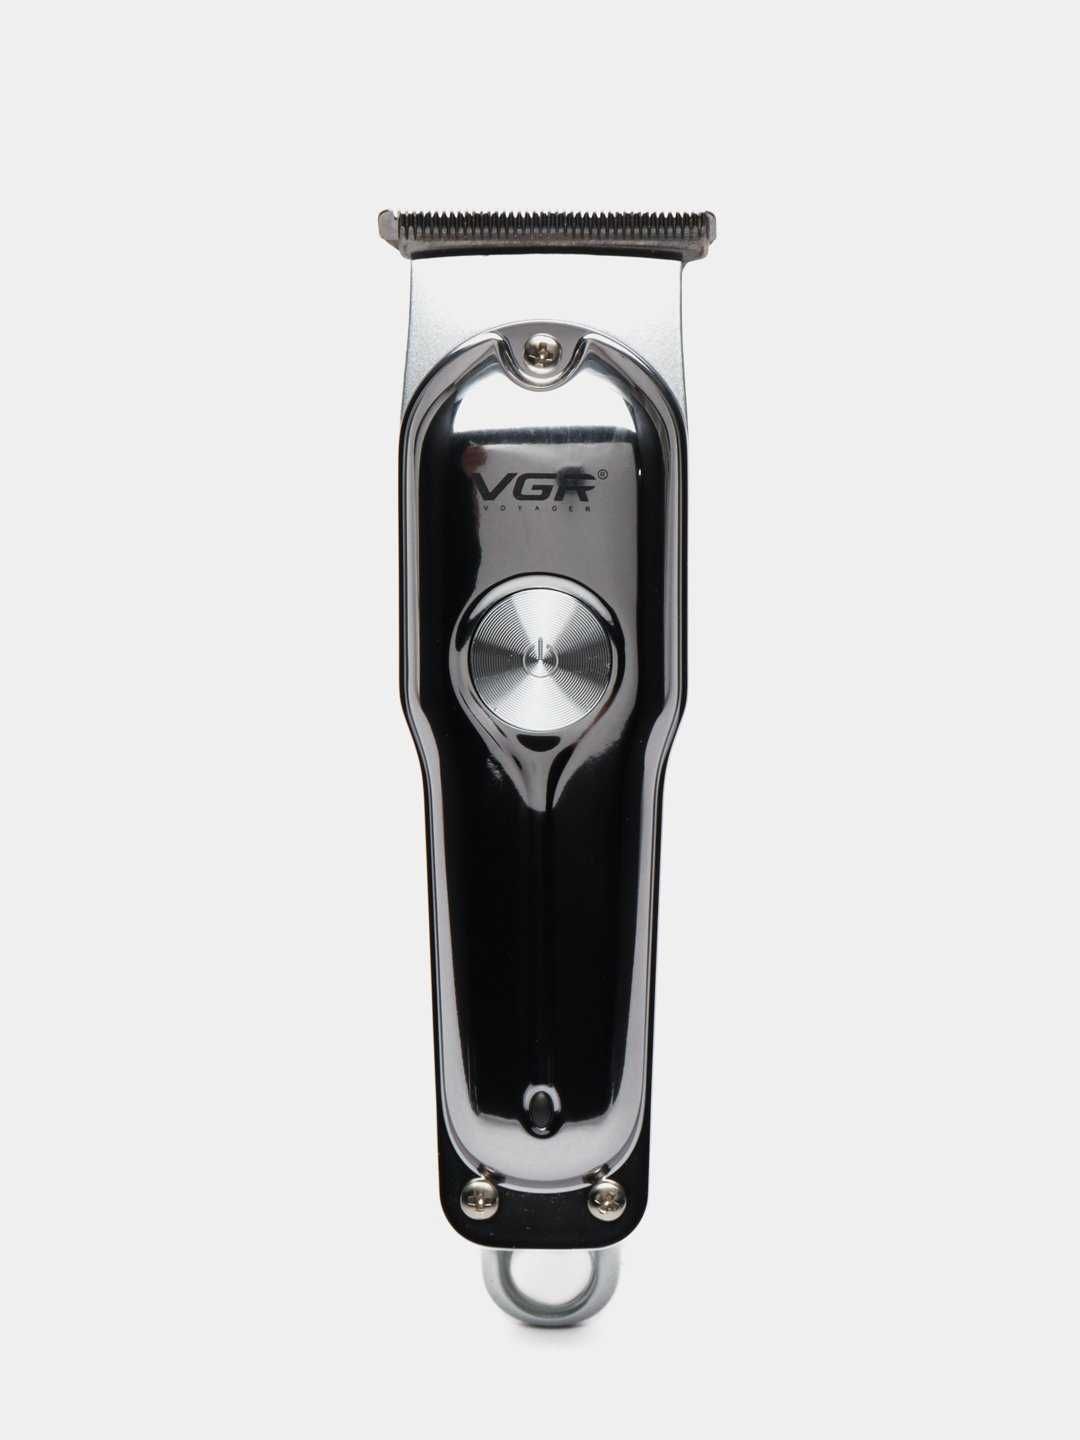 Professional simsiz trimmer VGR V-071 soqol va soch olish uchun